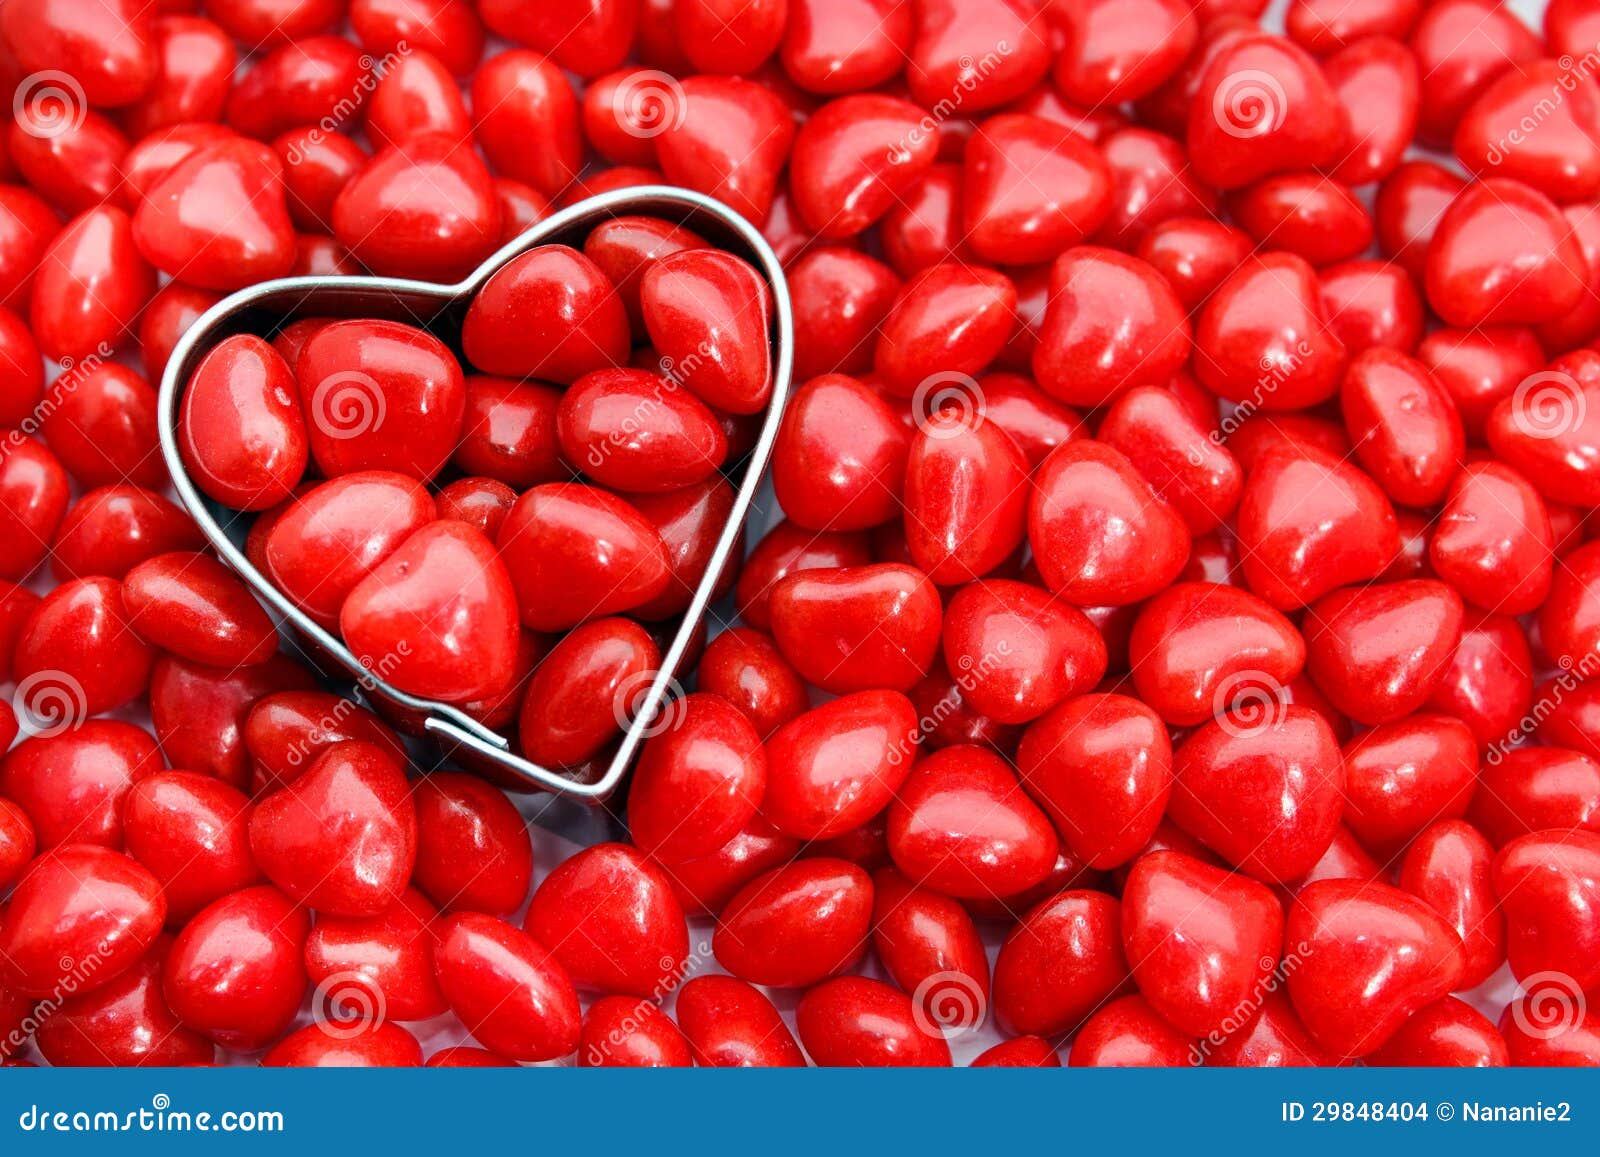 Roodgloeiend hartsuikergoed. Close-up van hart gevormde koekjessnijder die door roodgloeiend suikergoed wordt omringd